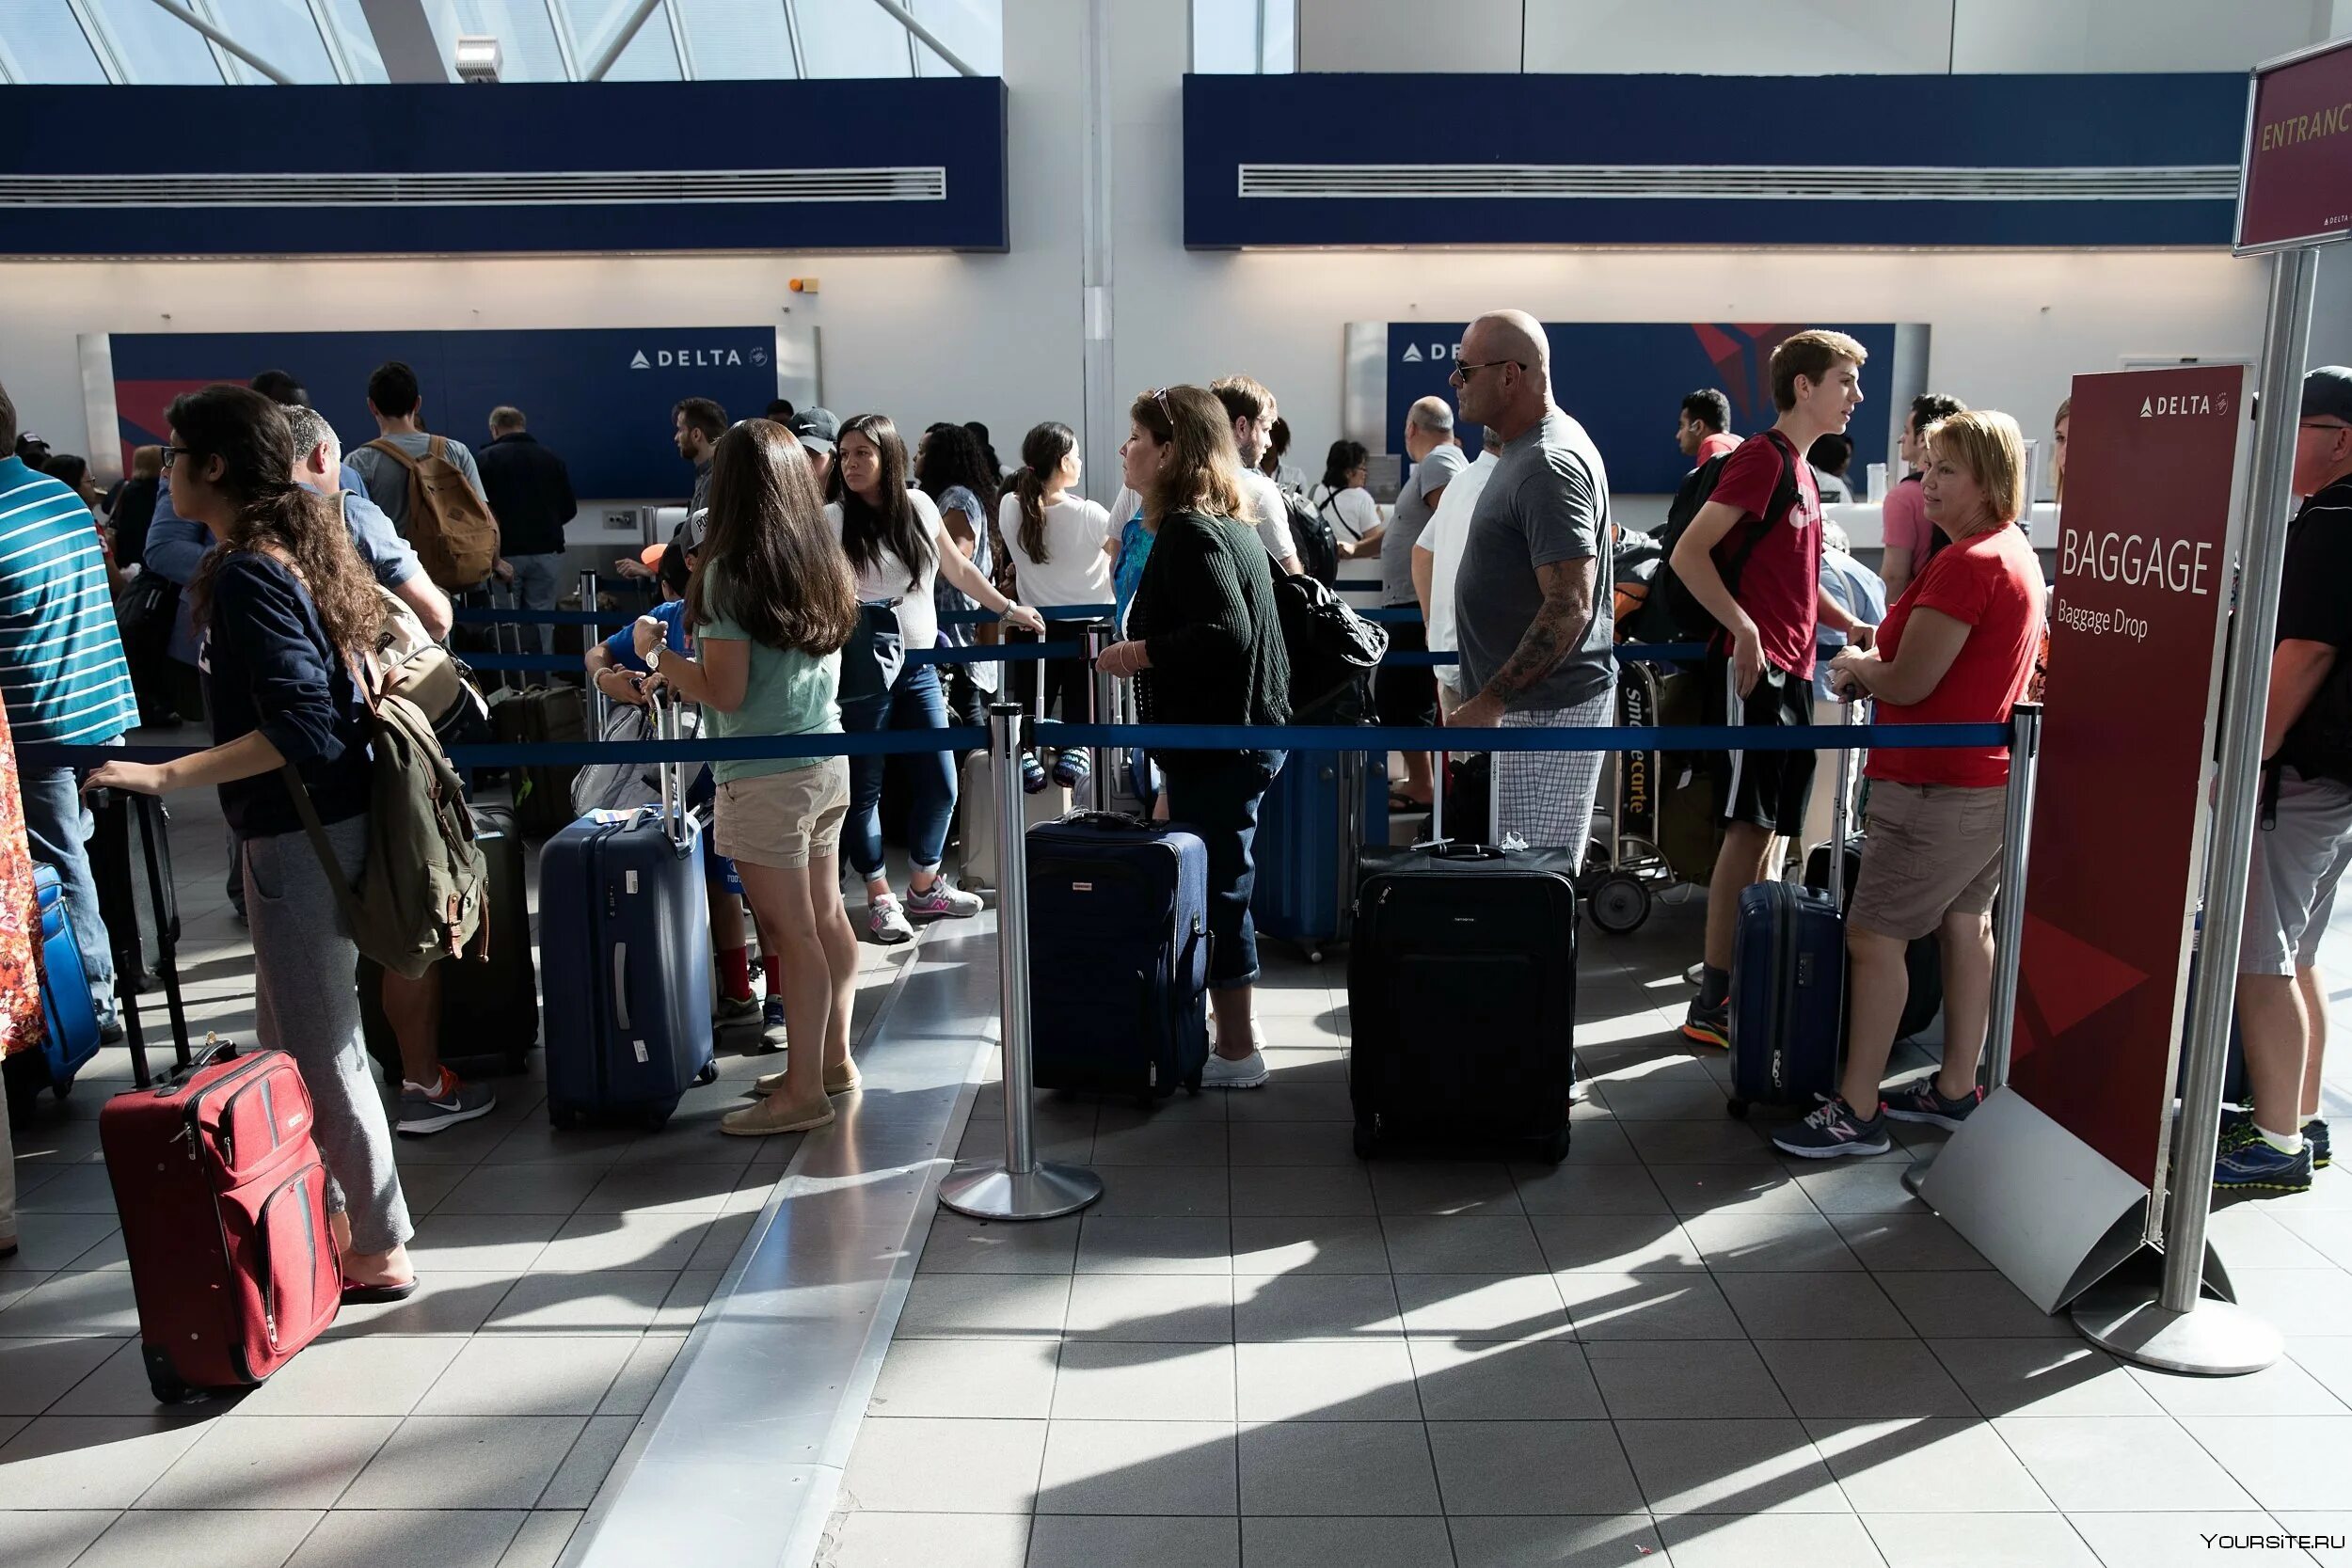 2014 год аэропорт. Пассажиры в аэропорту. Люди в аэропорту. Люди с чемоданами в аэропорту. Авиапассажиры аэропорт.